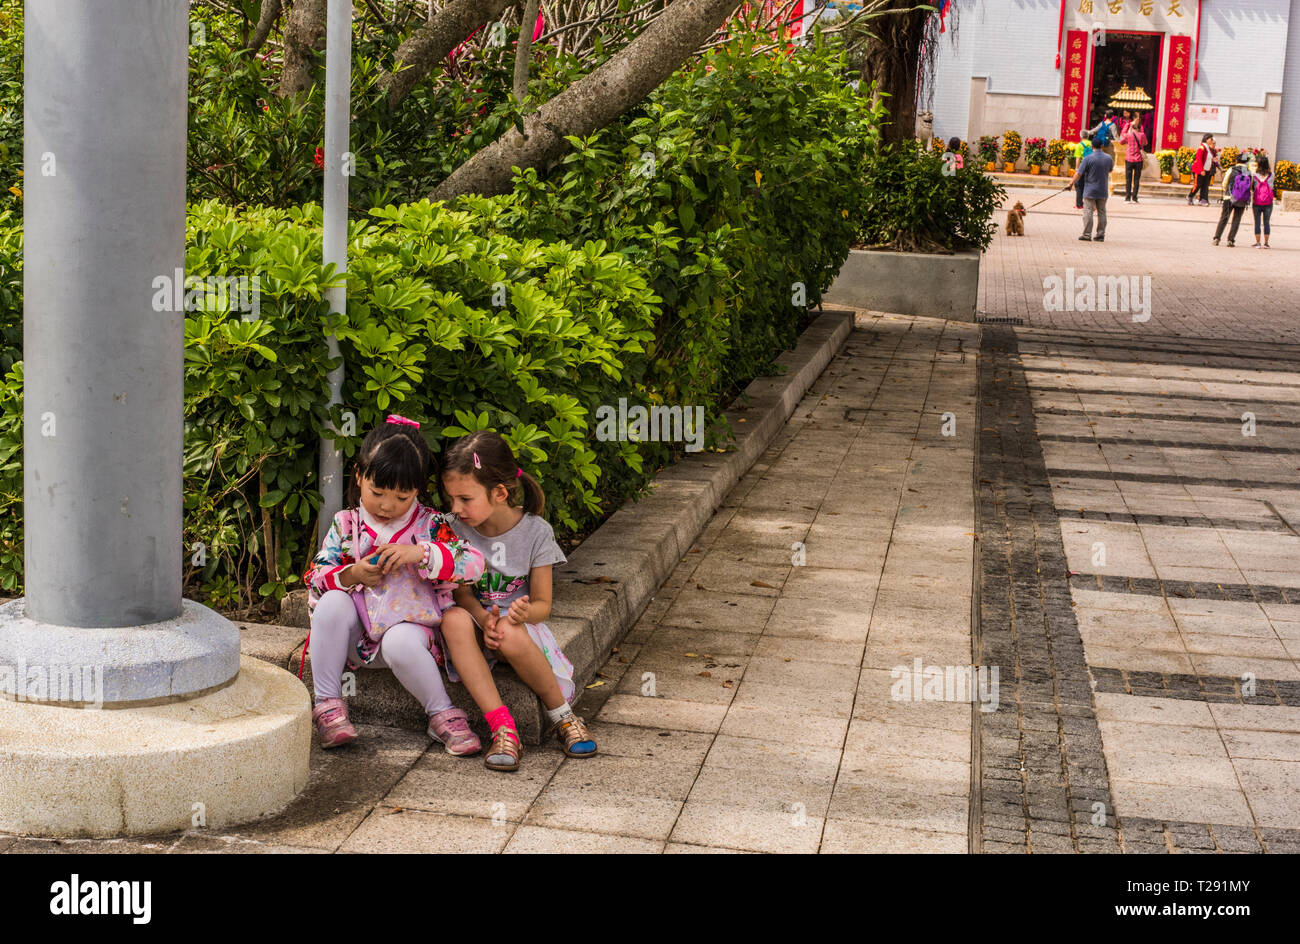 Deux jeunes filles, assis sur le coin du mur, dans le village balnéaire de Stanley, Hong Kong Banque D'Images